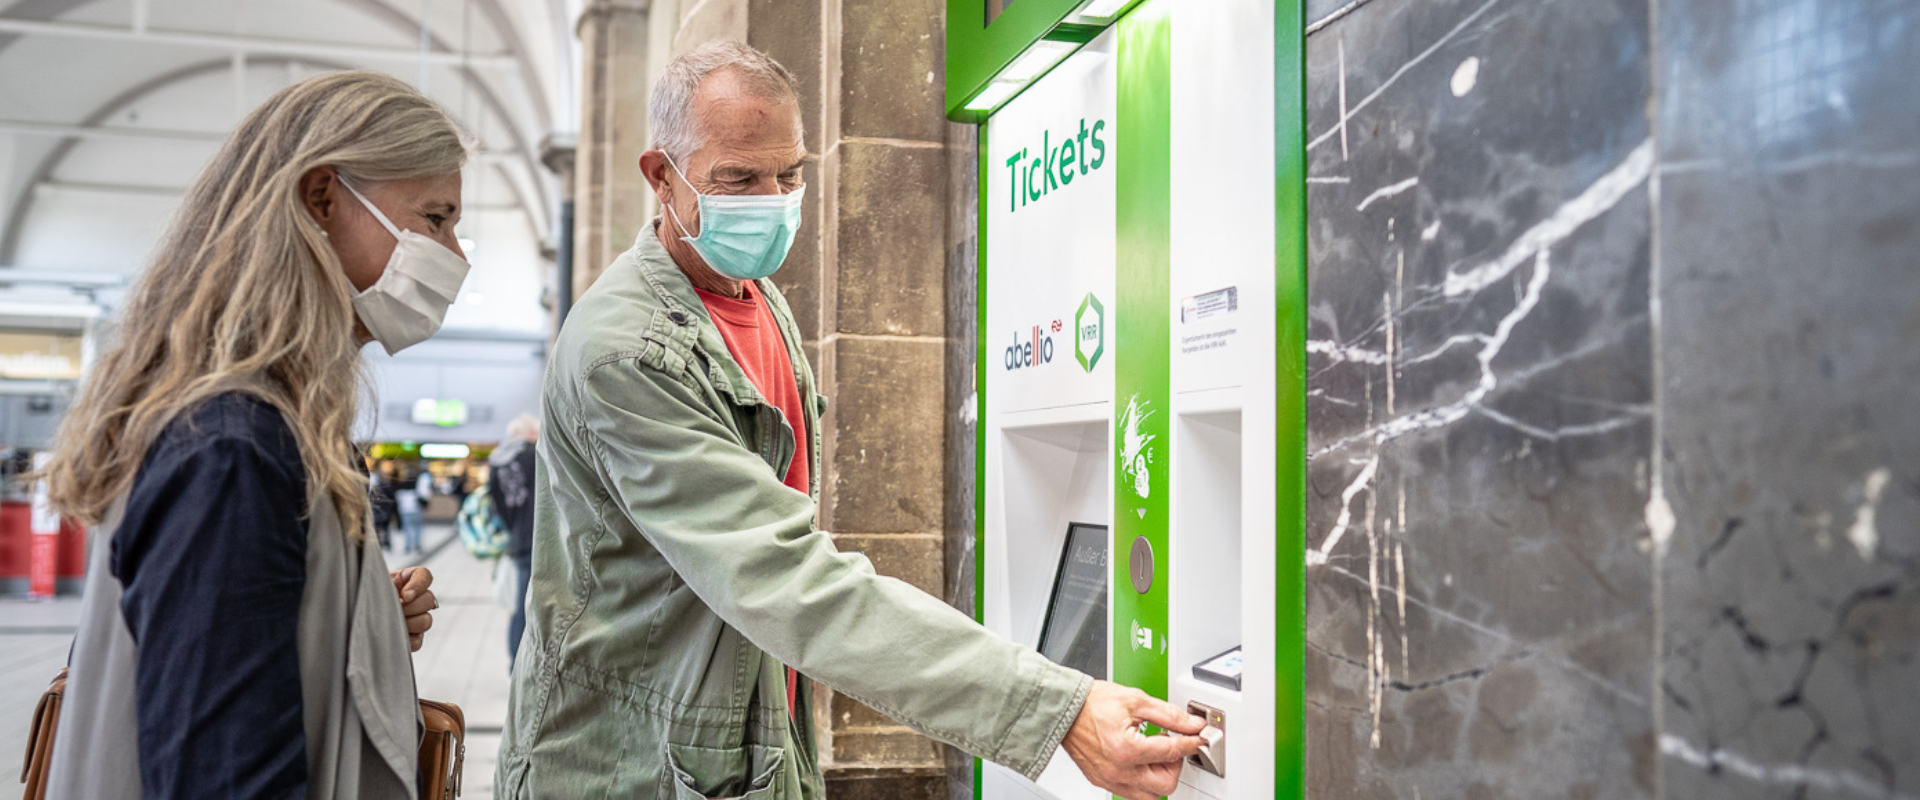 Ein Mann und eine Frau, die eine Gesichtsmaske tragen, stehen am Ticketautomat und bezahlen ein Ticket